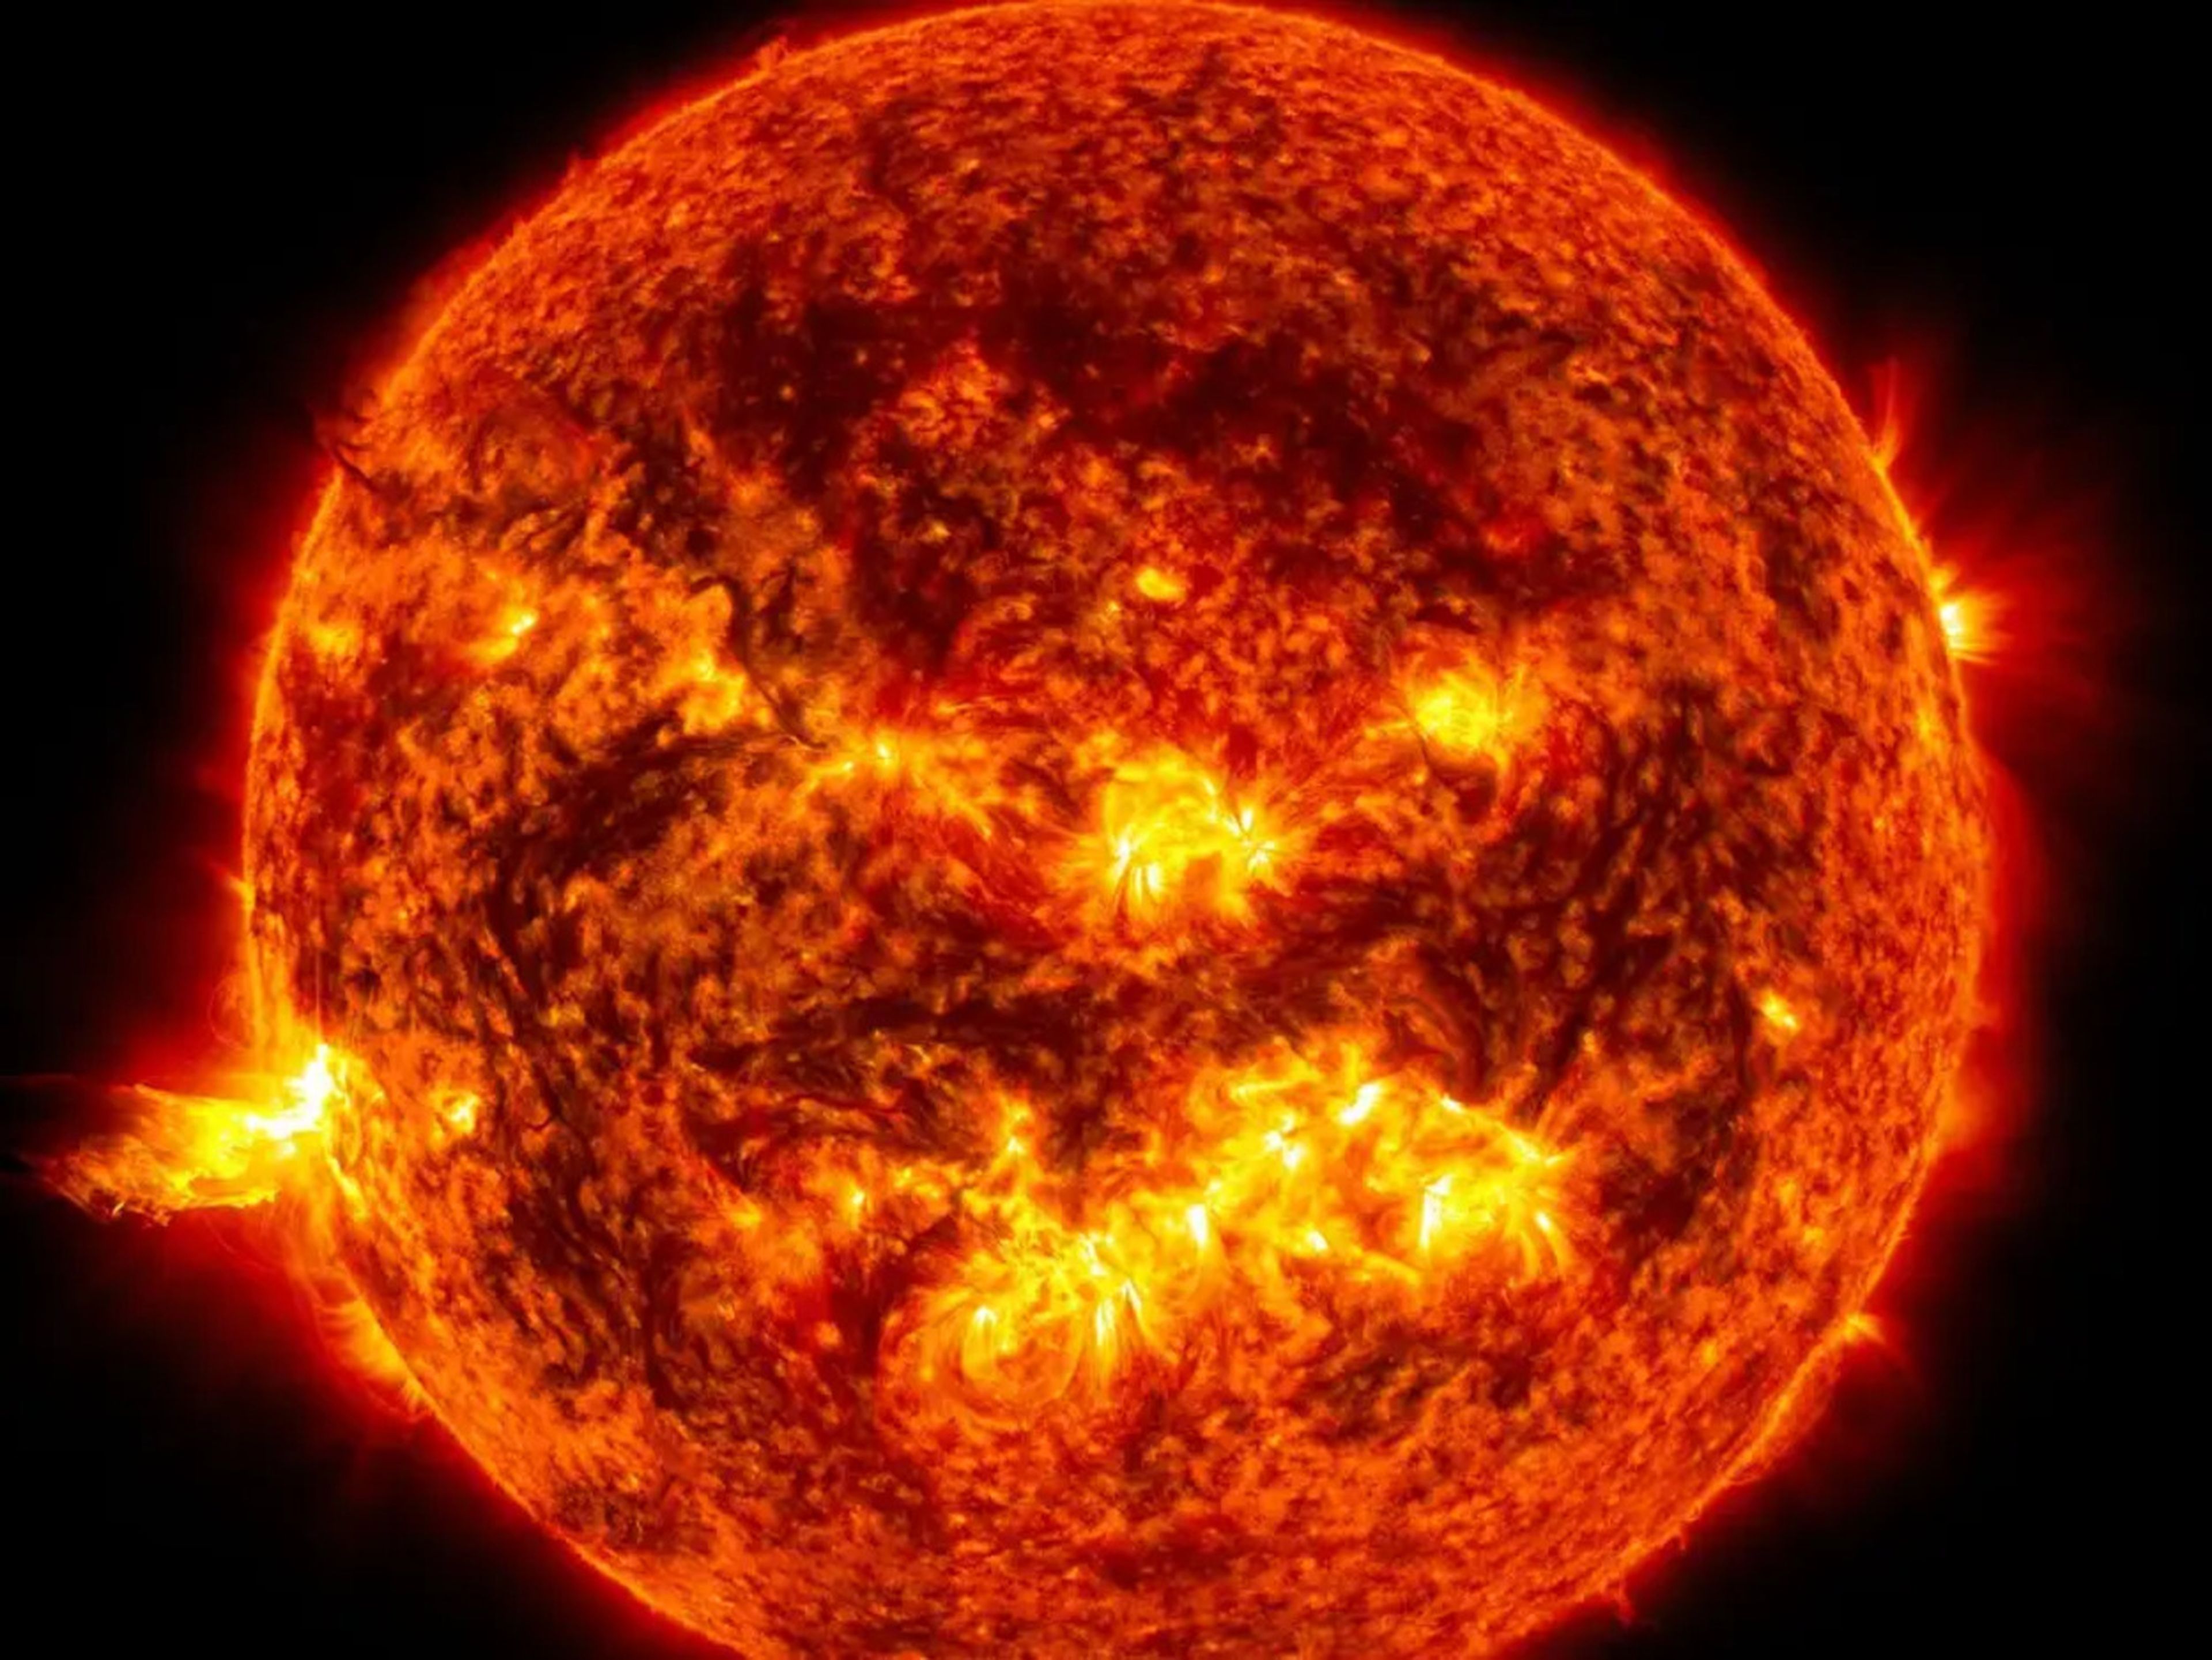 La luz brillante de una erupción solar en el lado izquierdo del sol en una imagen tomada en junio de 2013.